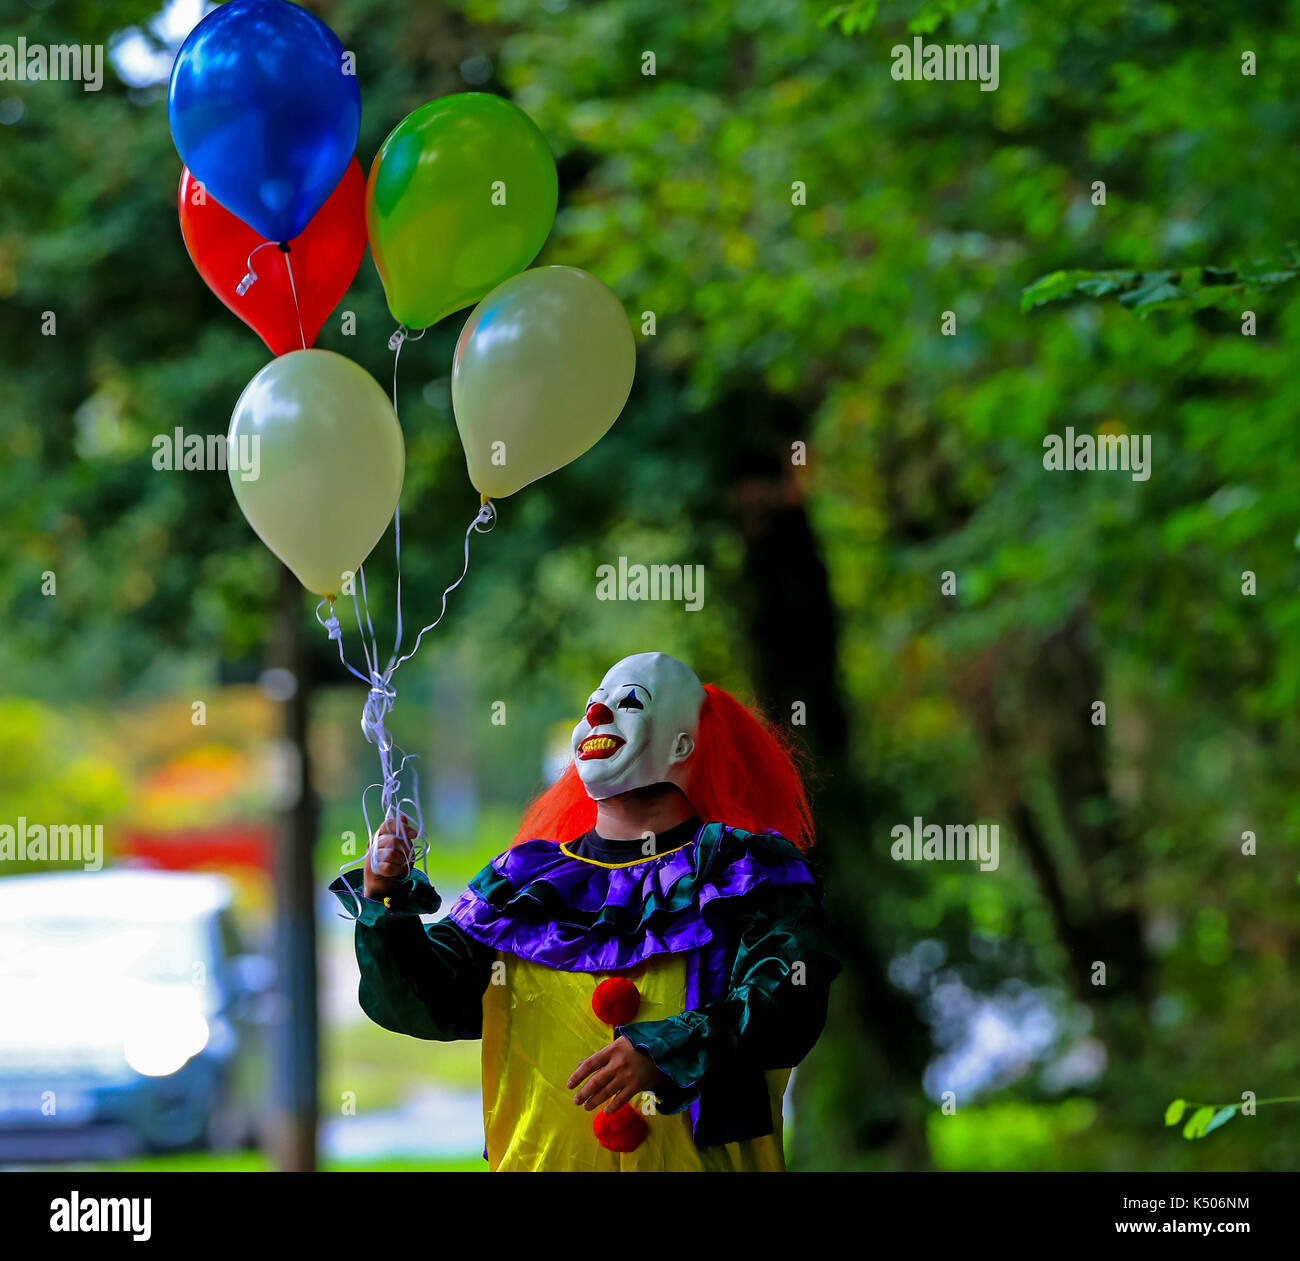 Modèle posés par une personne portant un costume clown à Liverpool, que les révisions pour l'adaptation cinématographique de stephen king's elle sont dans les critiques, avec le film laisse prévoir un tout nouveau public terrifié de clowns. Banque D'Images